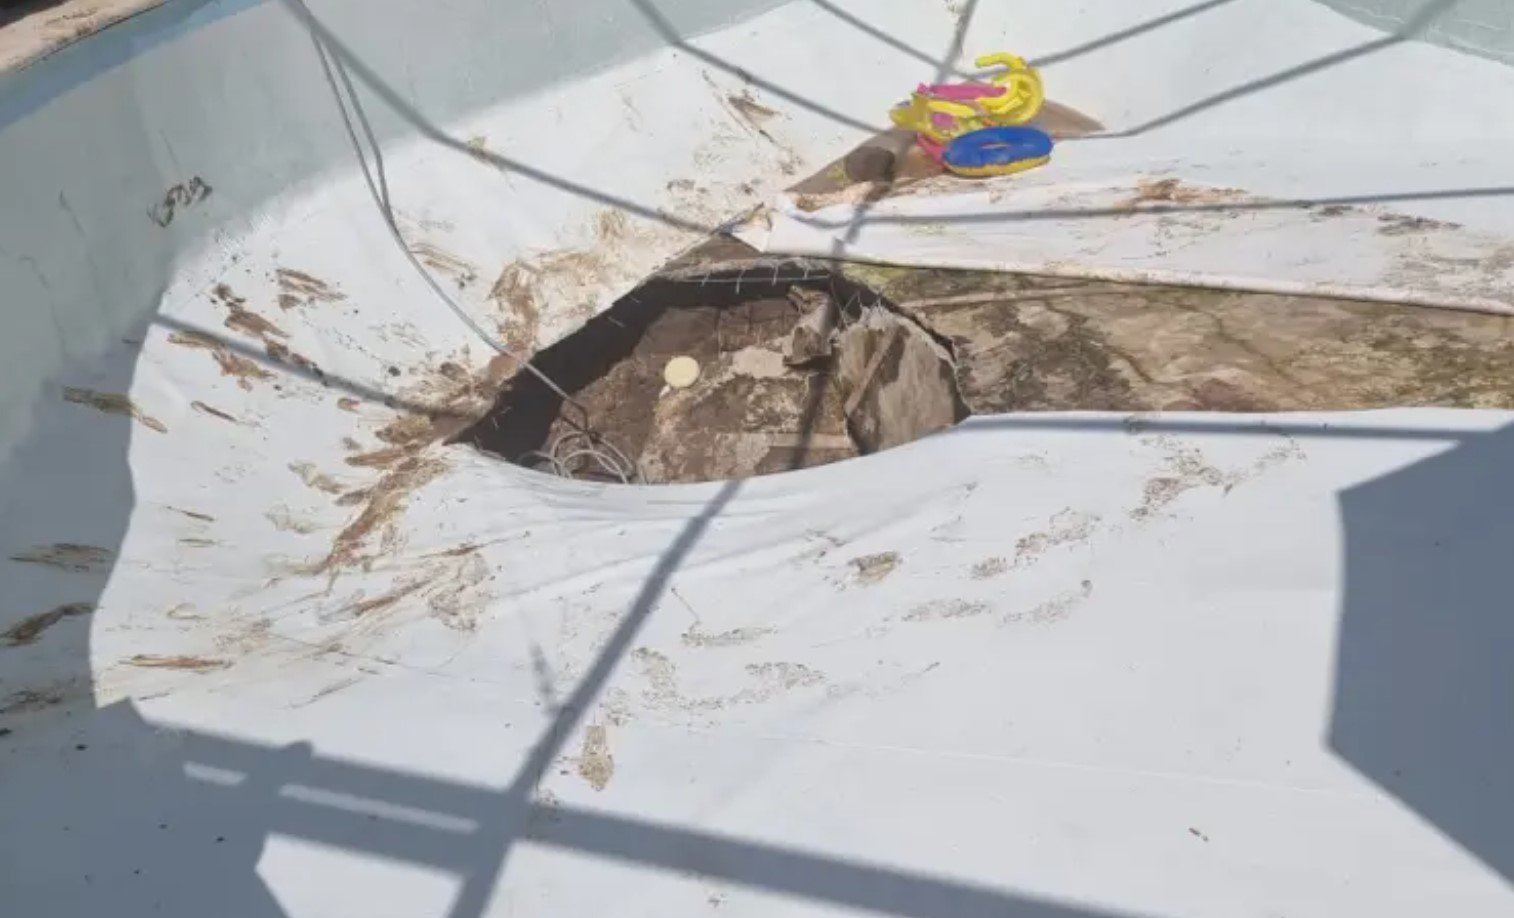 Гигантская воронка осушила бассейн за считанные секунды во время вечеринки в Израиле, погиб один человек (видео и фото)